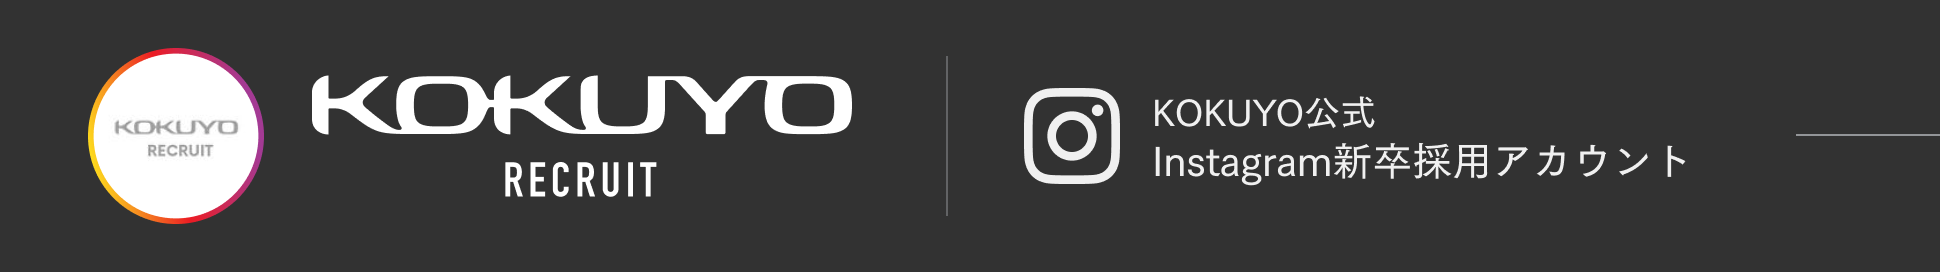 KOKUYO公式 Instagram新卒採用アカウント